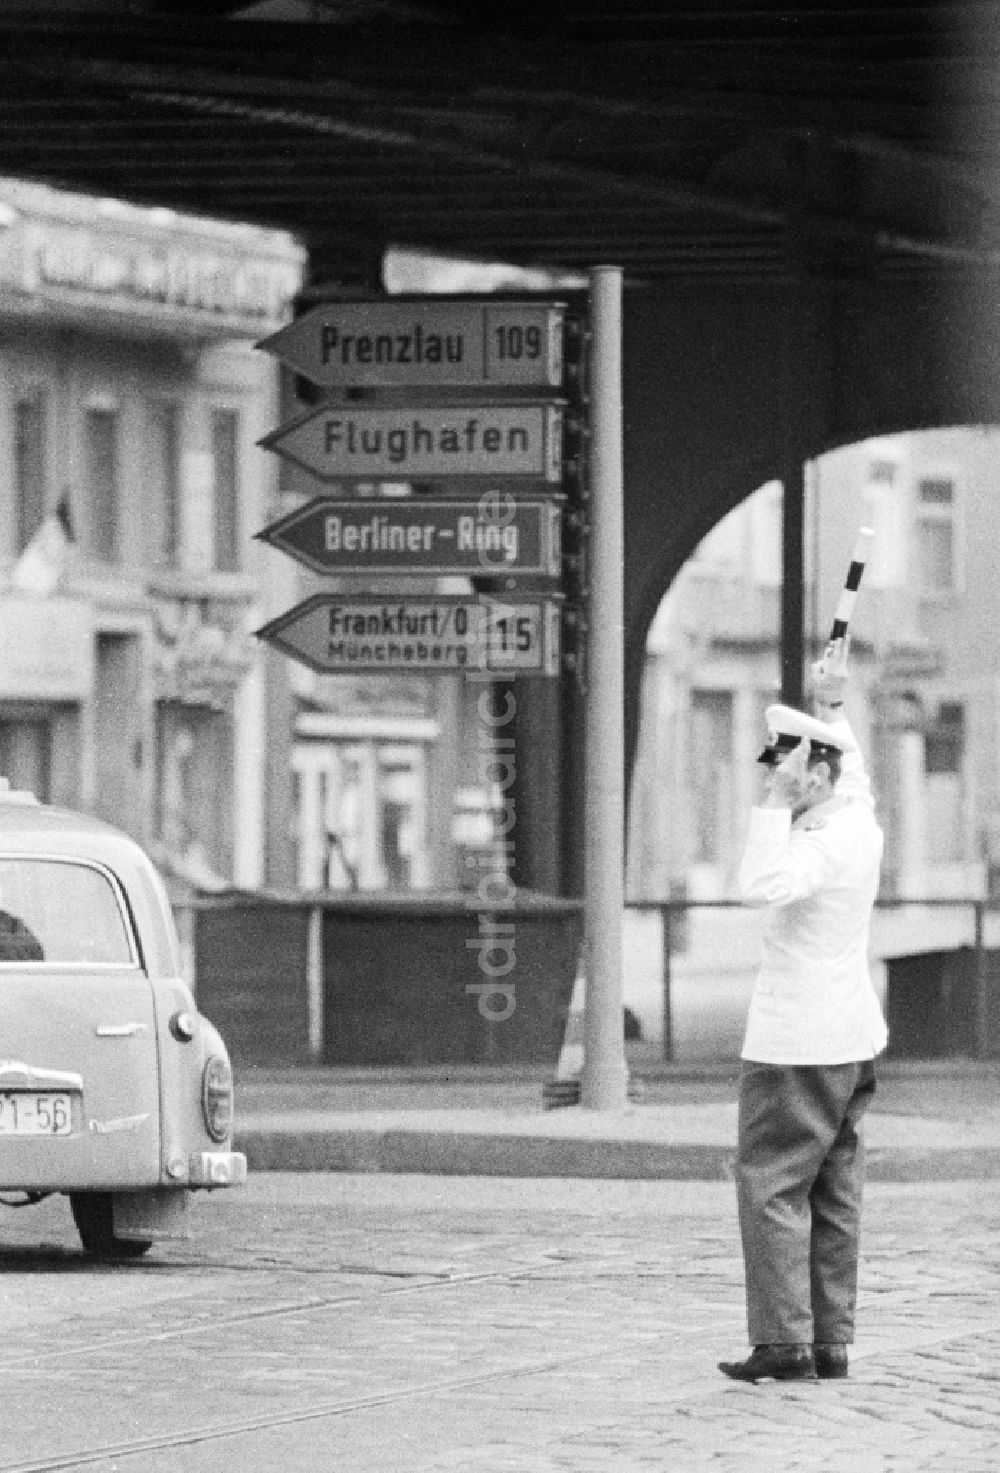 DDR-Fotoarchiv: Berlin - Praktische Ausbildung bei der Volkspolizei / Verkehrspolizei in Berlin, der ehemaligen Hauptstadt der DDR, Deutsche Demokratische Republik